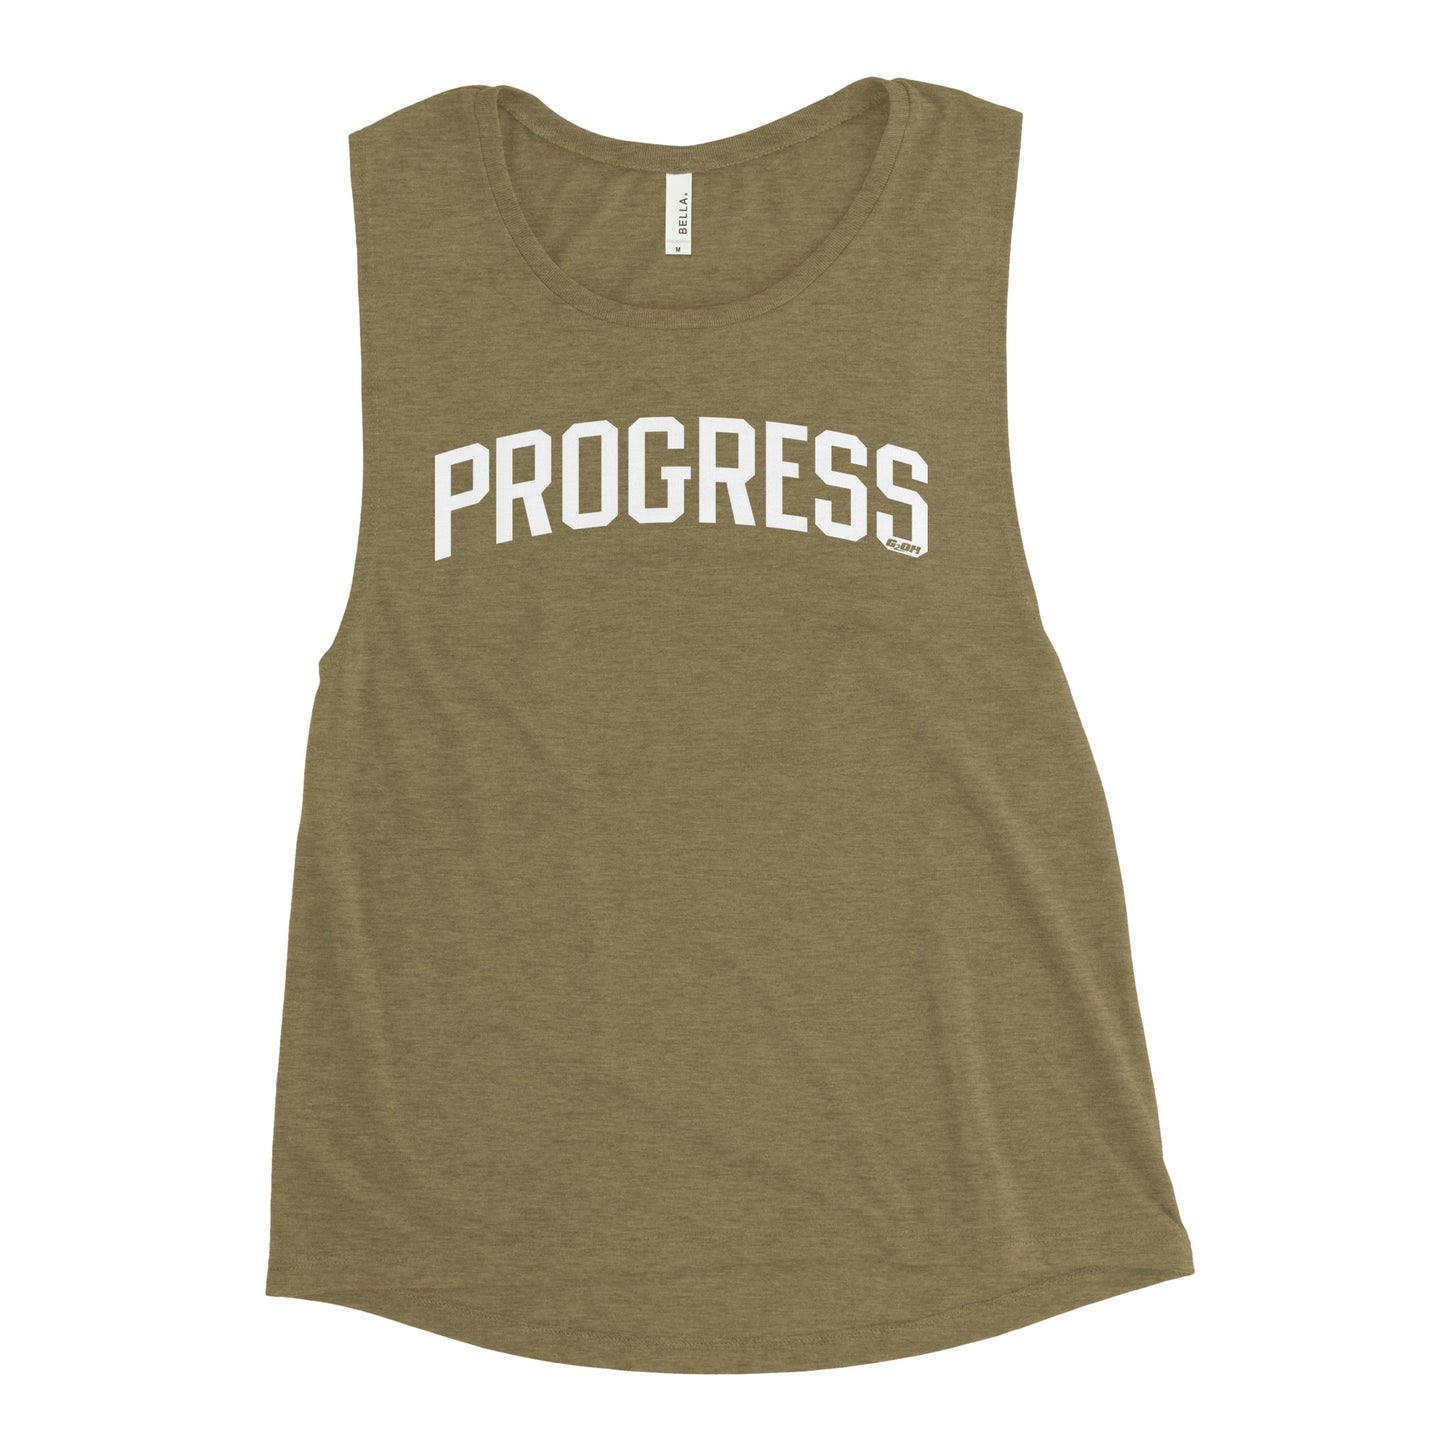 Progress Women's Muscle Tank